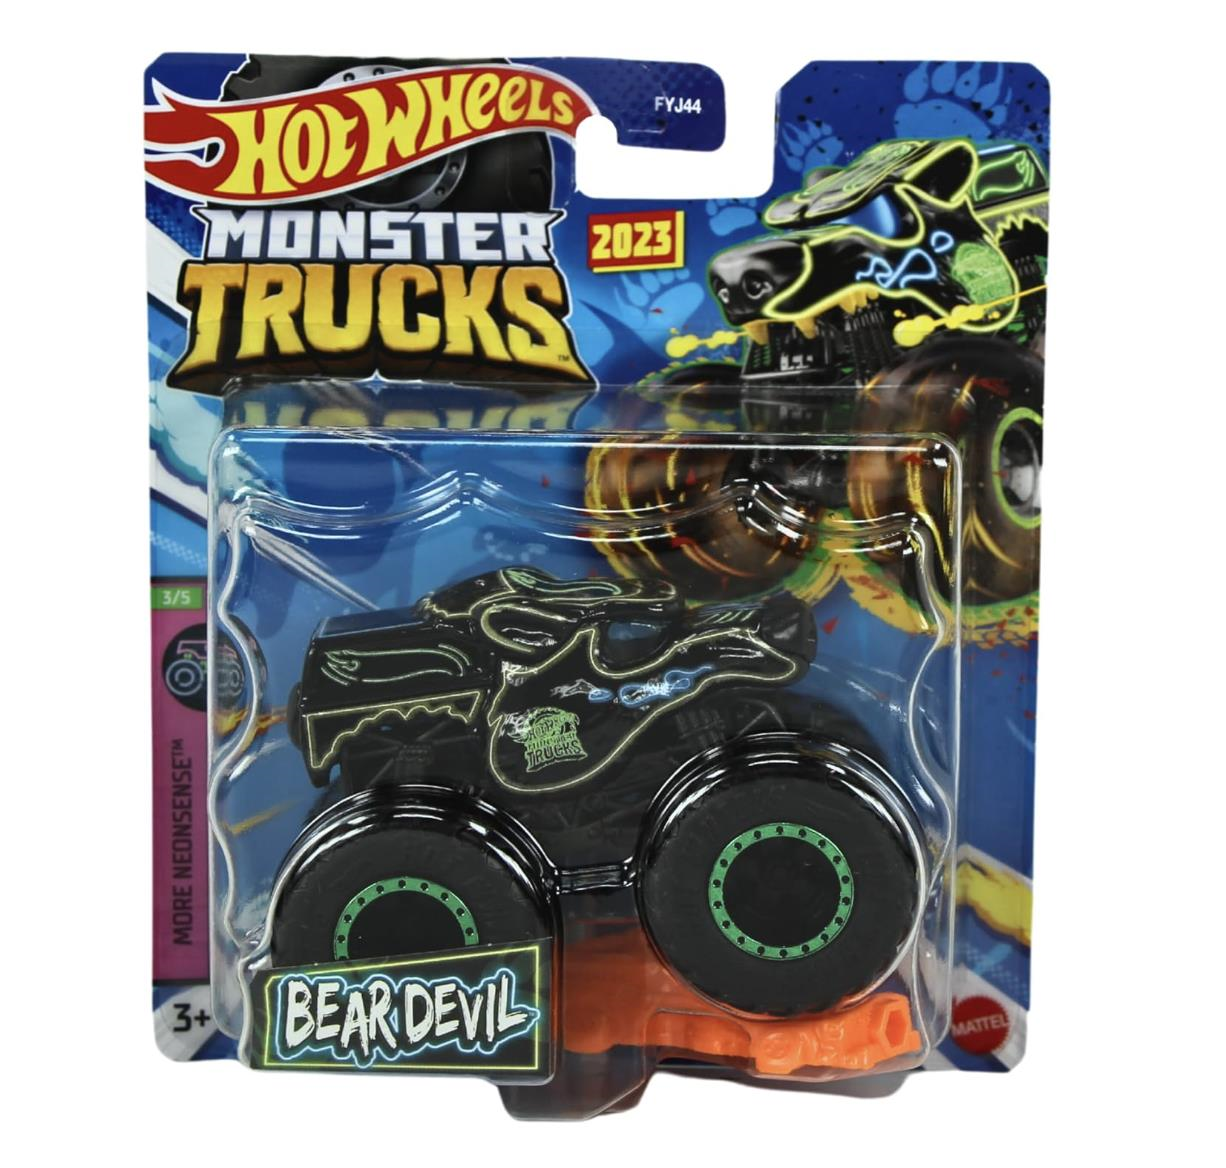 Hot Wheels Monster Trucks 1:64 Araba FYJ44-HLT01 | Toysall